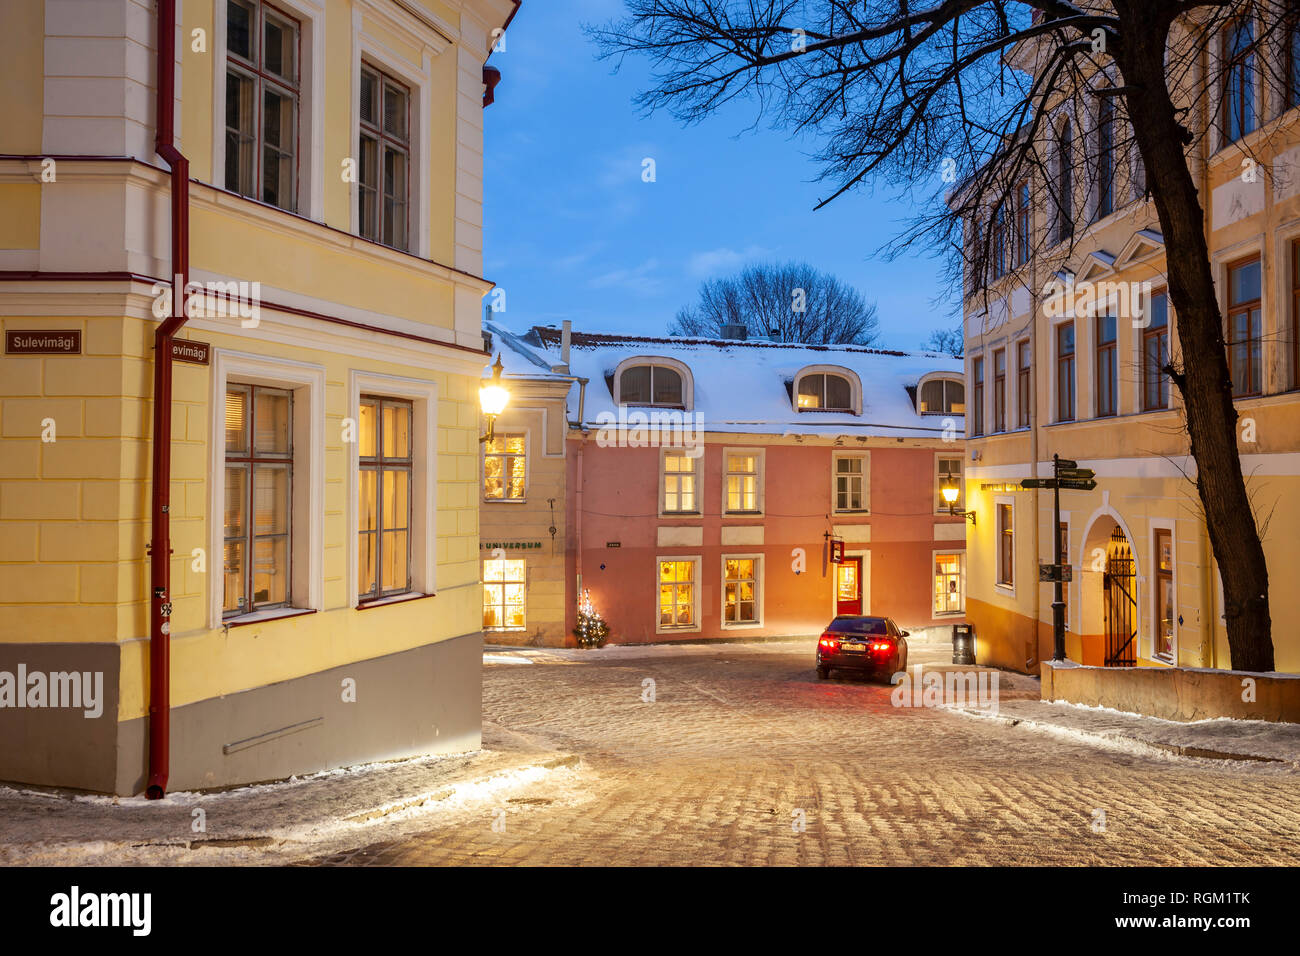 Winter evening in old town of Tallinn, Estonia. Stock Photo